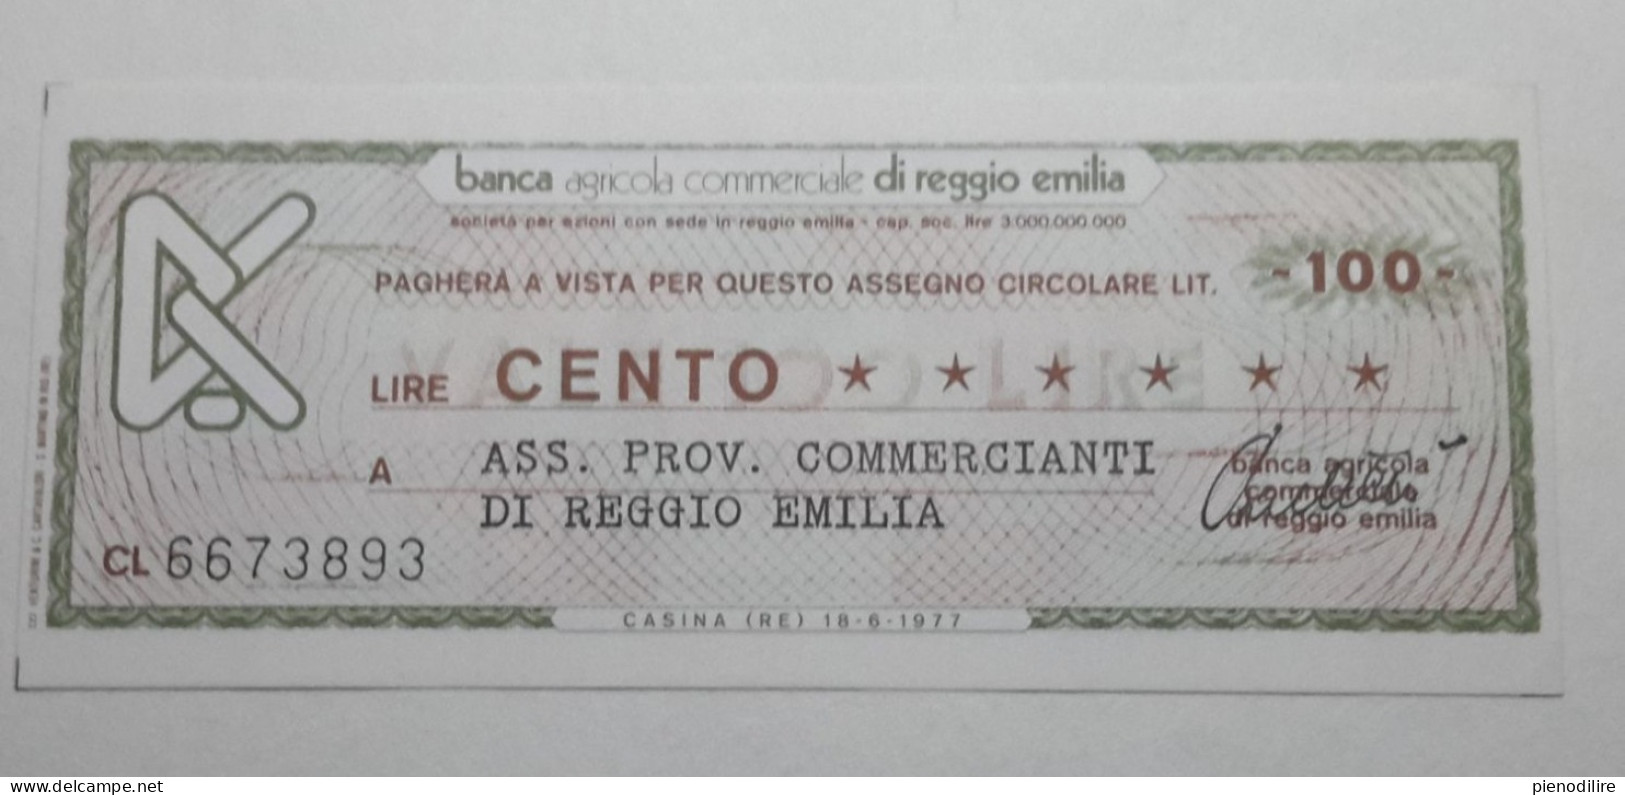 100 LIRE 18.6.1977 BANCA AGRICOLA COMMERCIALE REGGIO EMILIA (A.44) - [10] Checks And Mini-checks